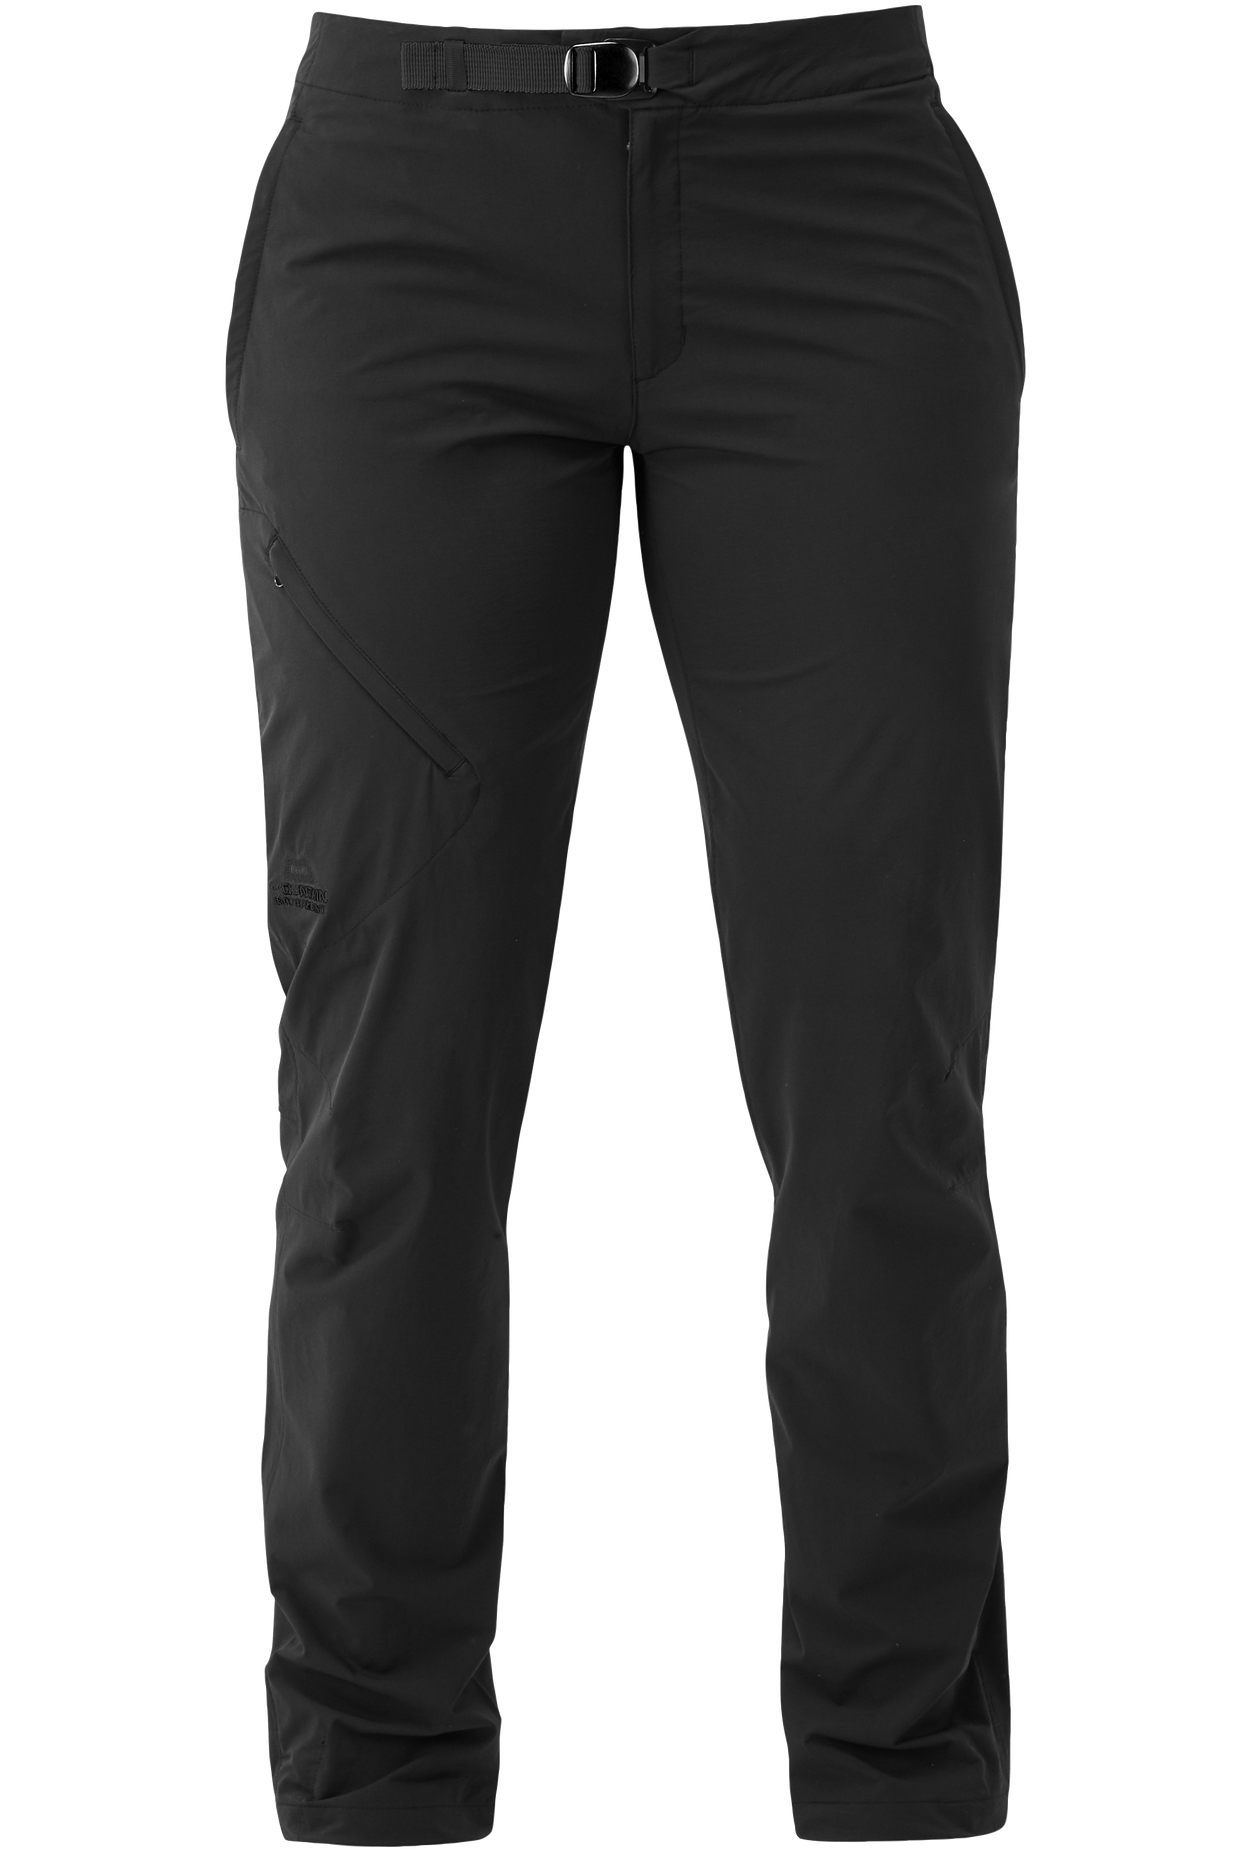 Mountain Equipment dámské softshellové kalhoty Comici Wmns Pant - prodloužené Barva: black/black, Velikost: 8/XS